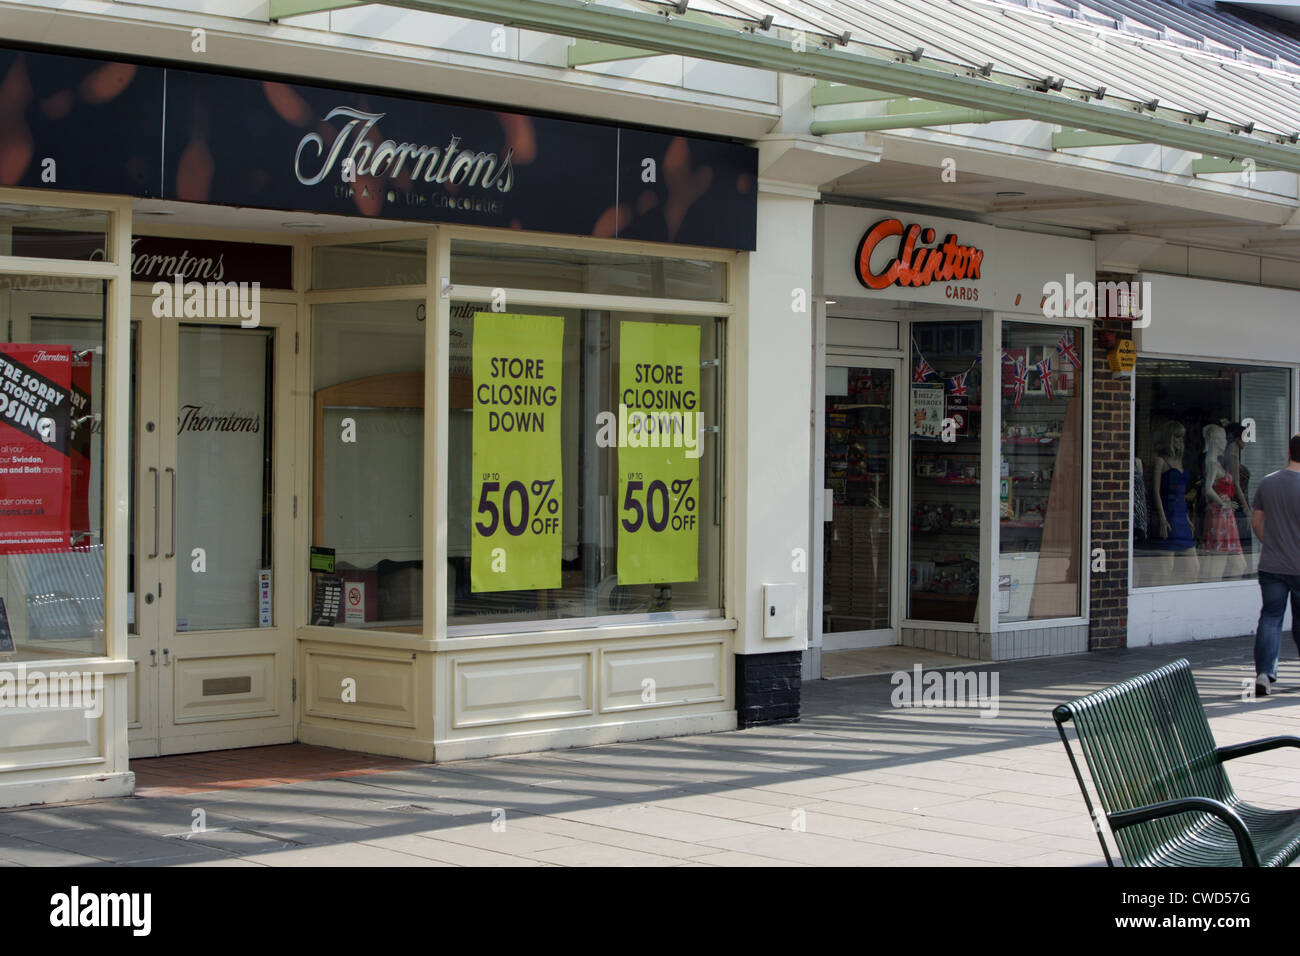 2 grandi catene di negozi che hanno sofferto durante la recessione di strada alta del 2011/12: Thorntons e Clinton Cards. Foto Stock